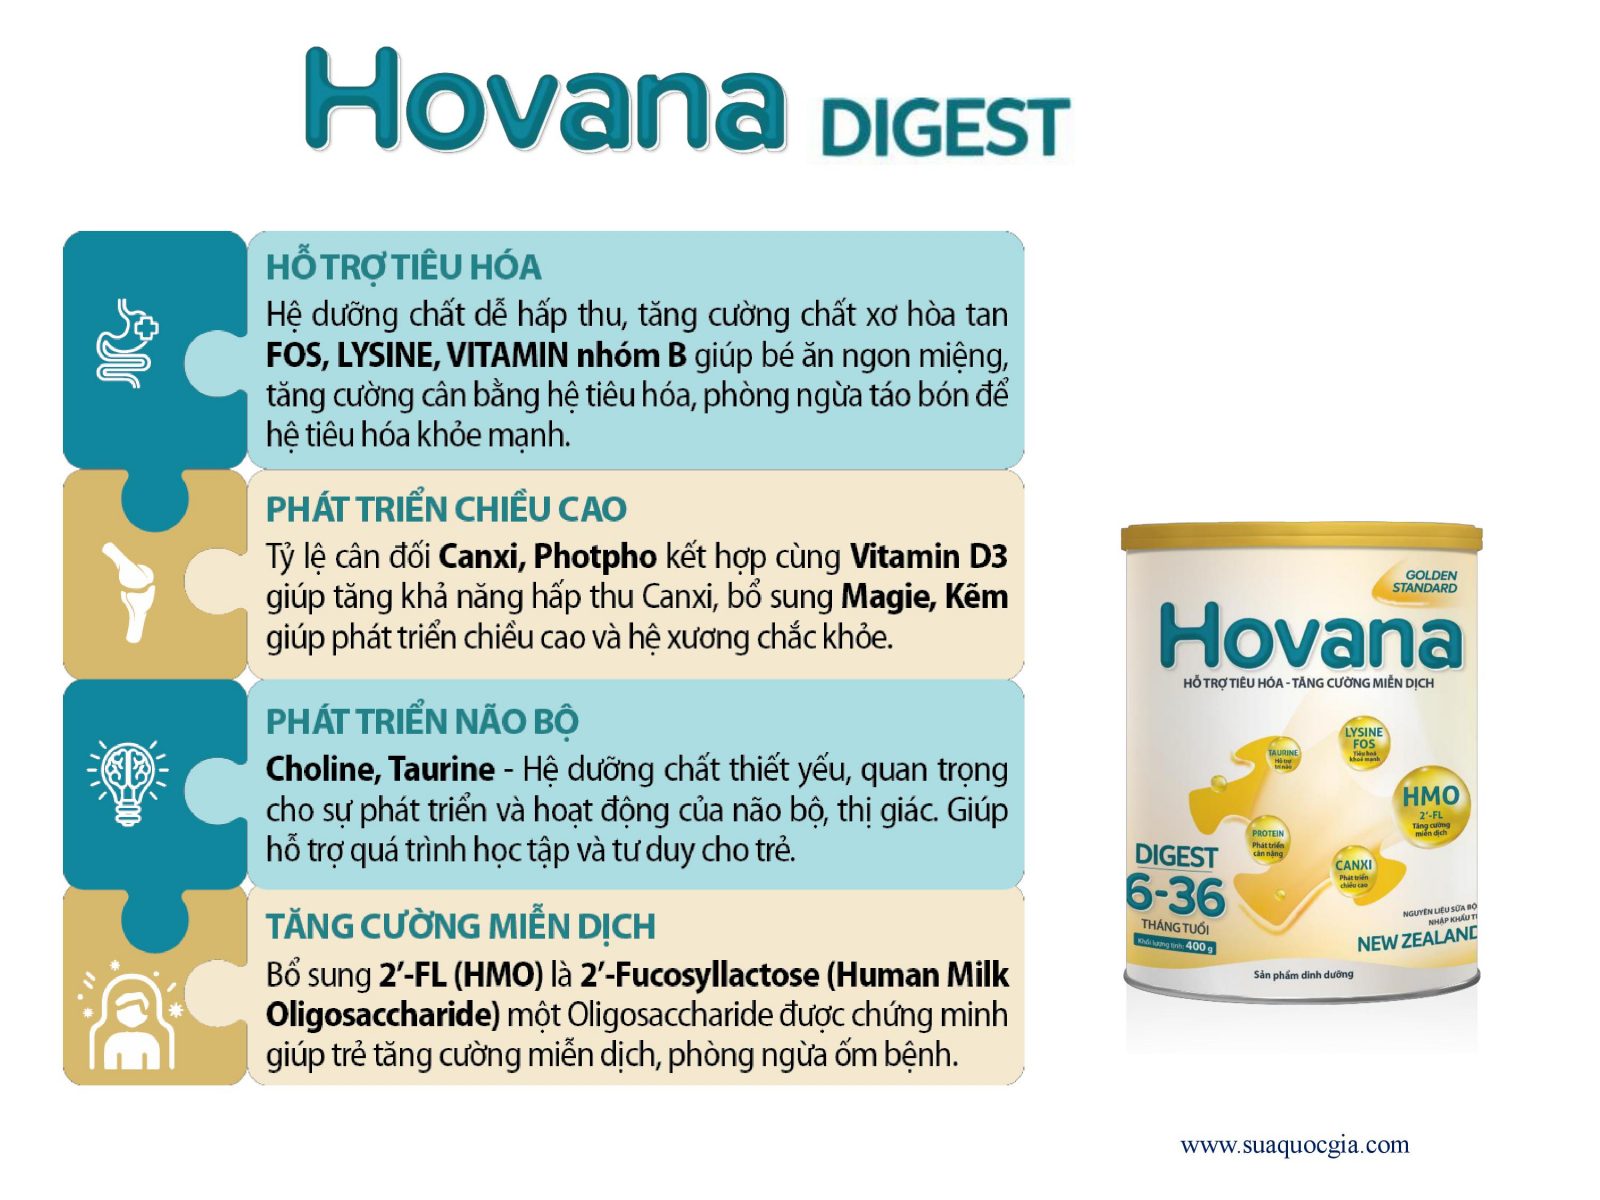 Sữa Bột Hovana Digest 400gr hỗ trợ tiêu hóa, tăng cường miễn dịch, tăng cân tự nhiên cho bé từ 6 - 36 tháng với công thức ưu việt